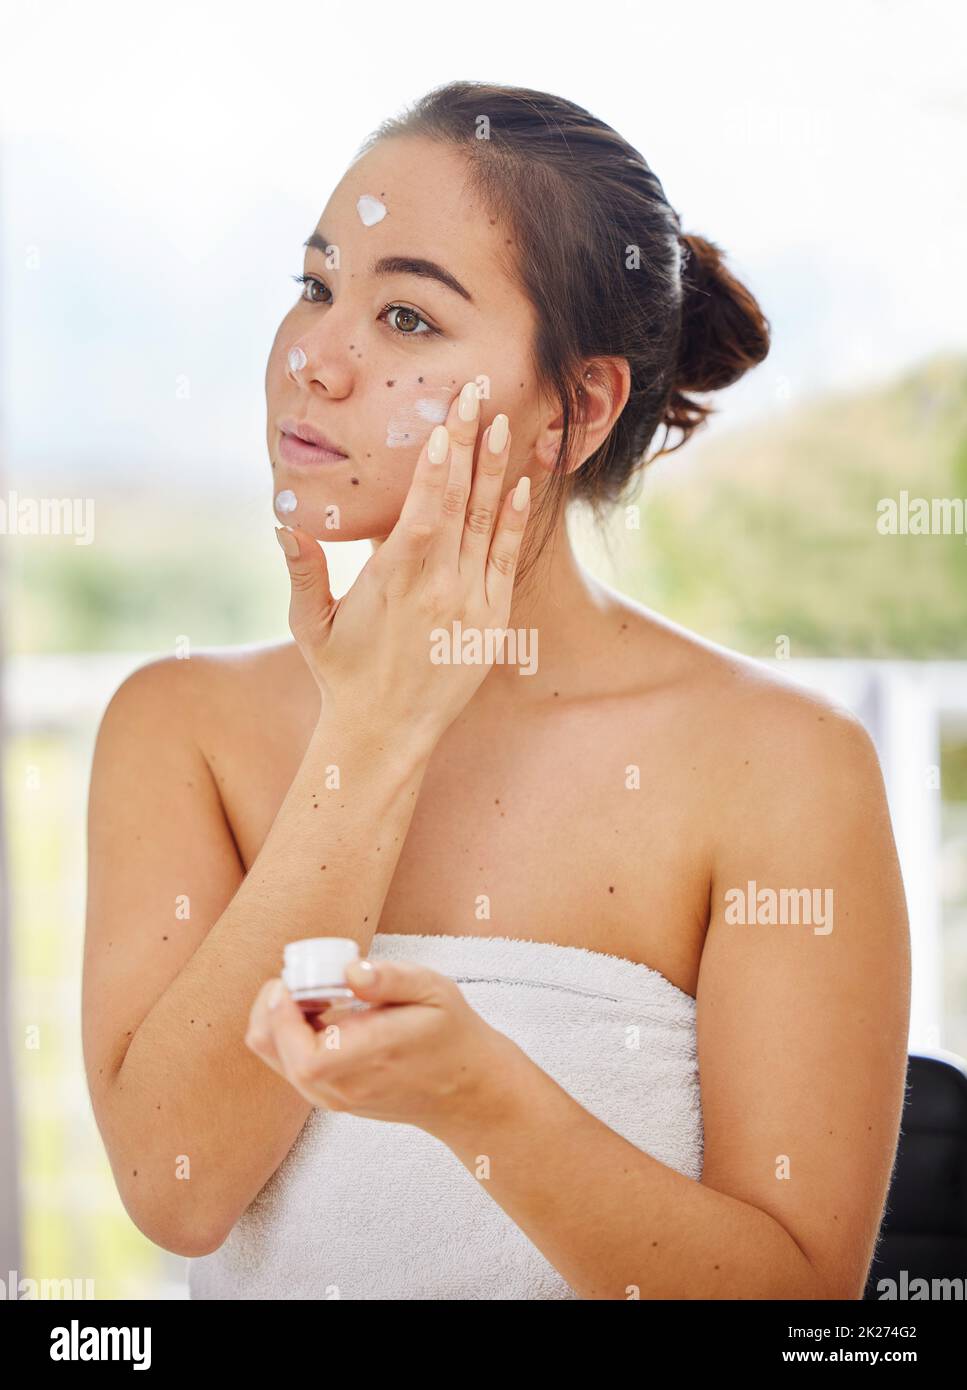 Ich habe den ganzen Tag über Feuchtigkeit im Gesicht. Aufnahme einer jungen Frau, die während ihrer morgendlichen Schönheitsroutine Feuchtigkeitscreme auf ihr Gesicht anwendet. Stockfoto